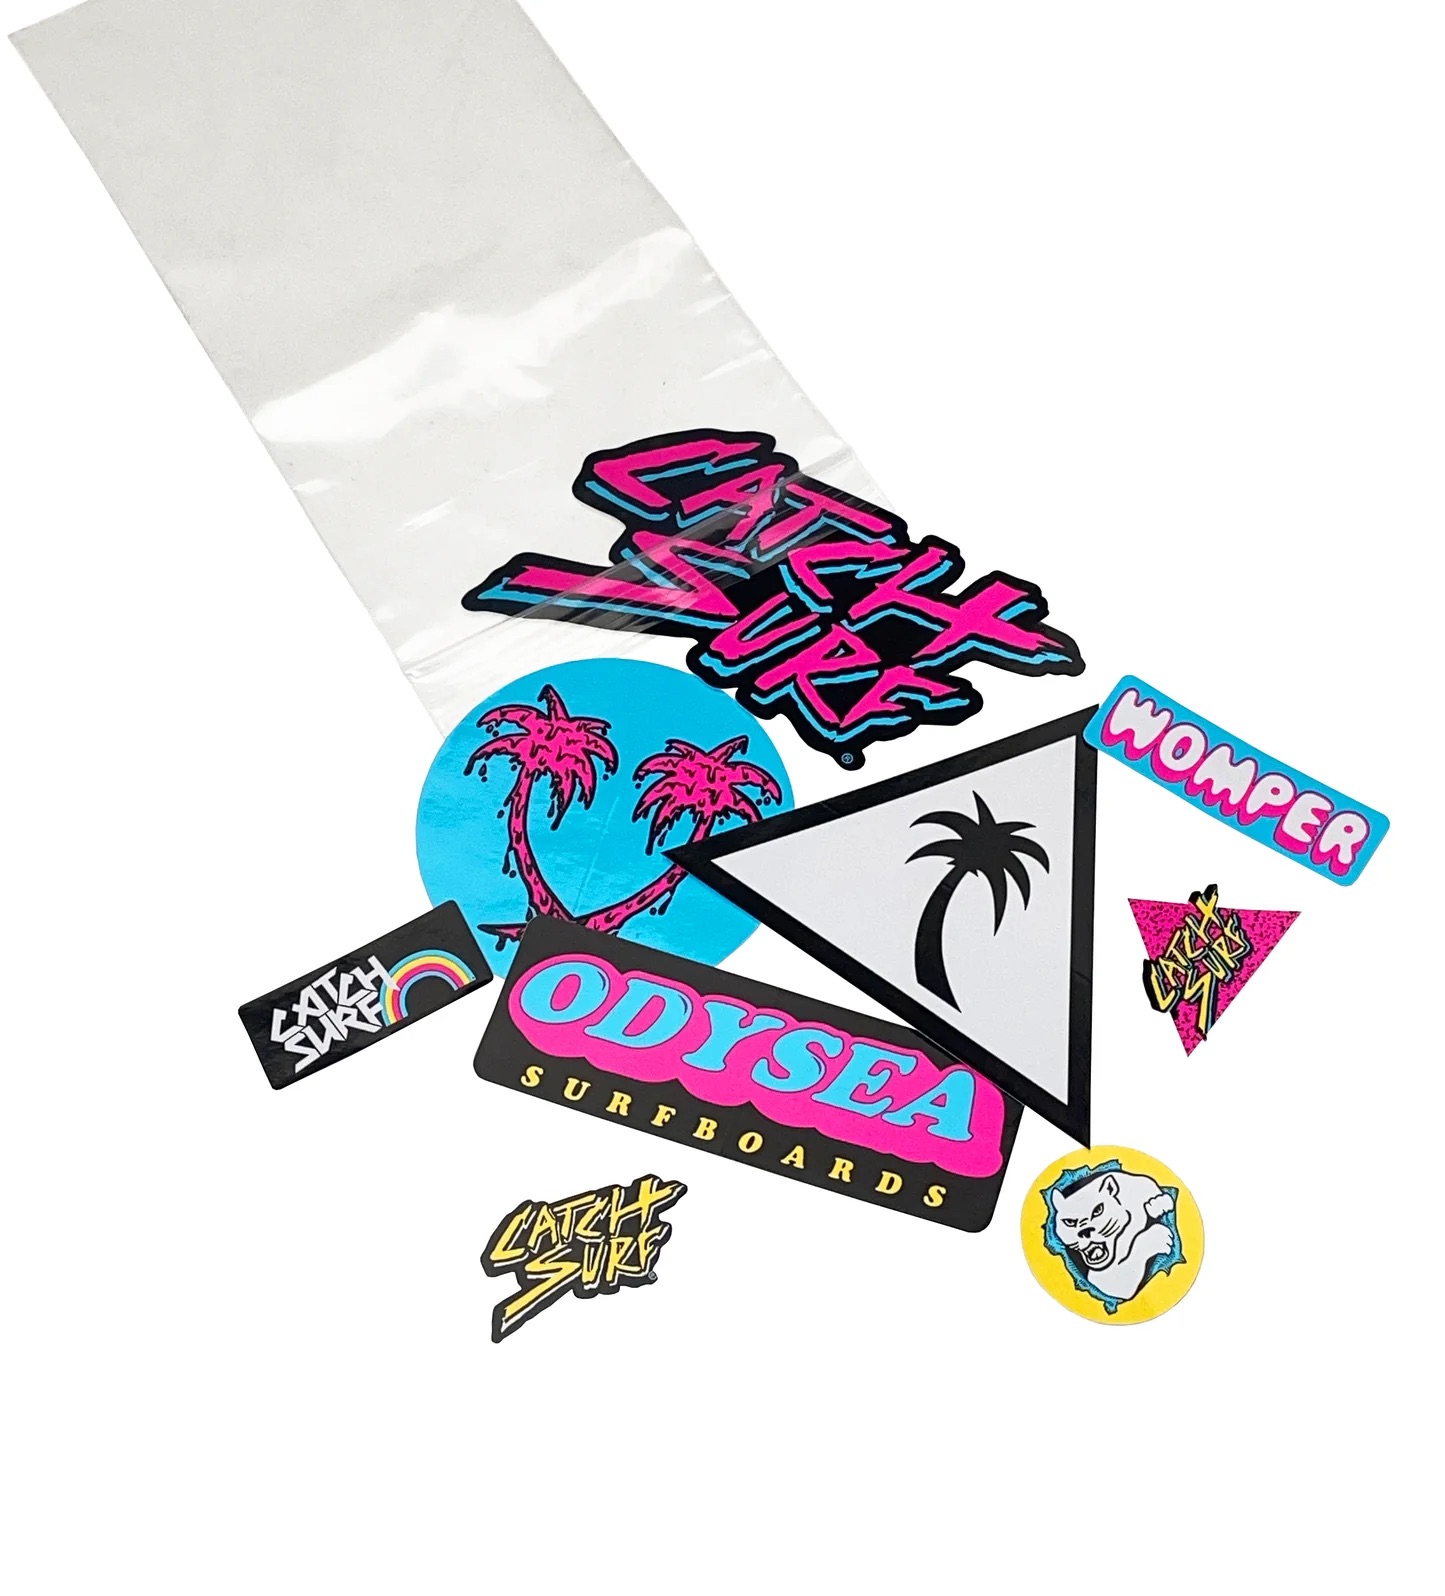 Catch Surf Sticker Pack – $6